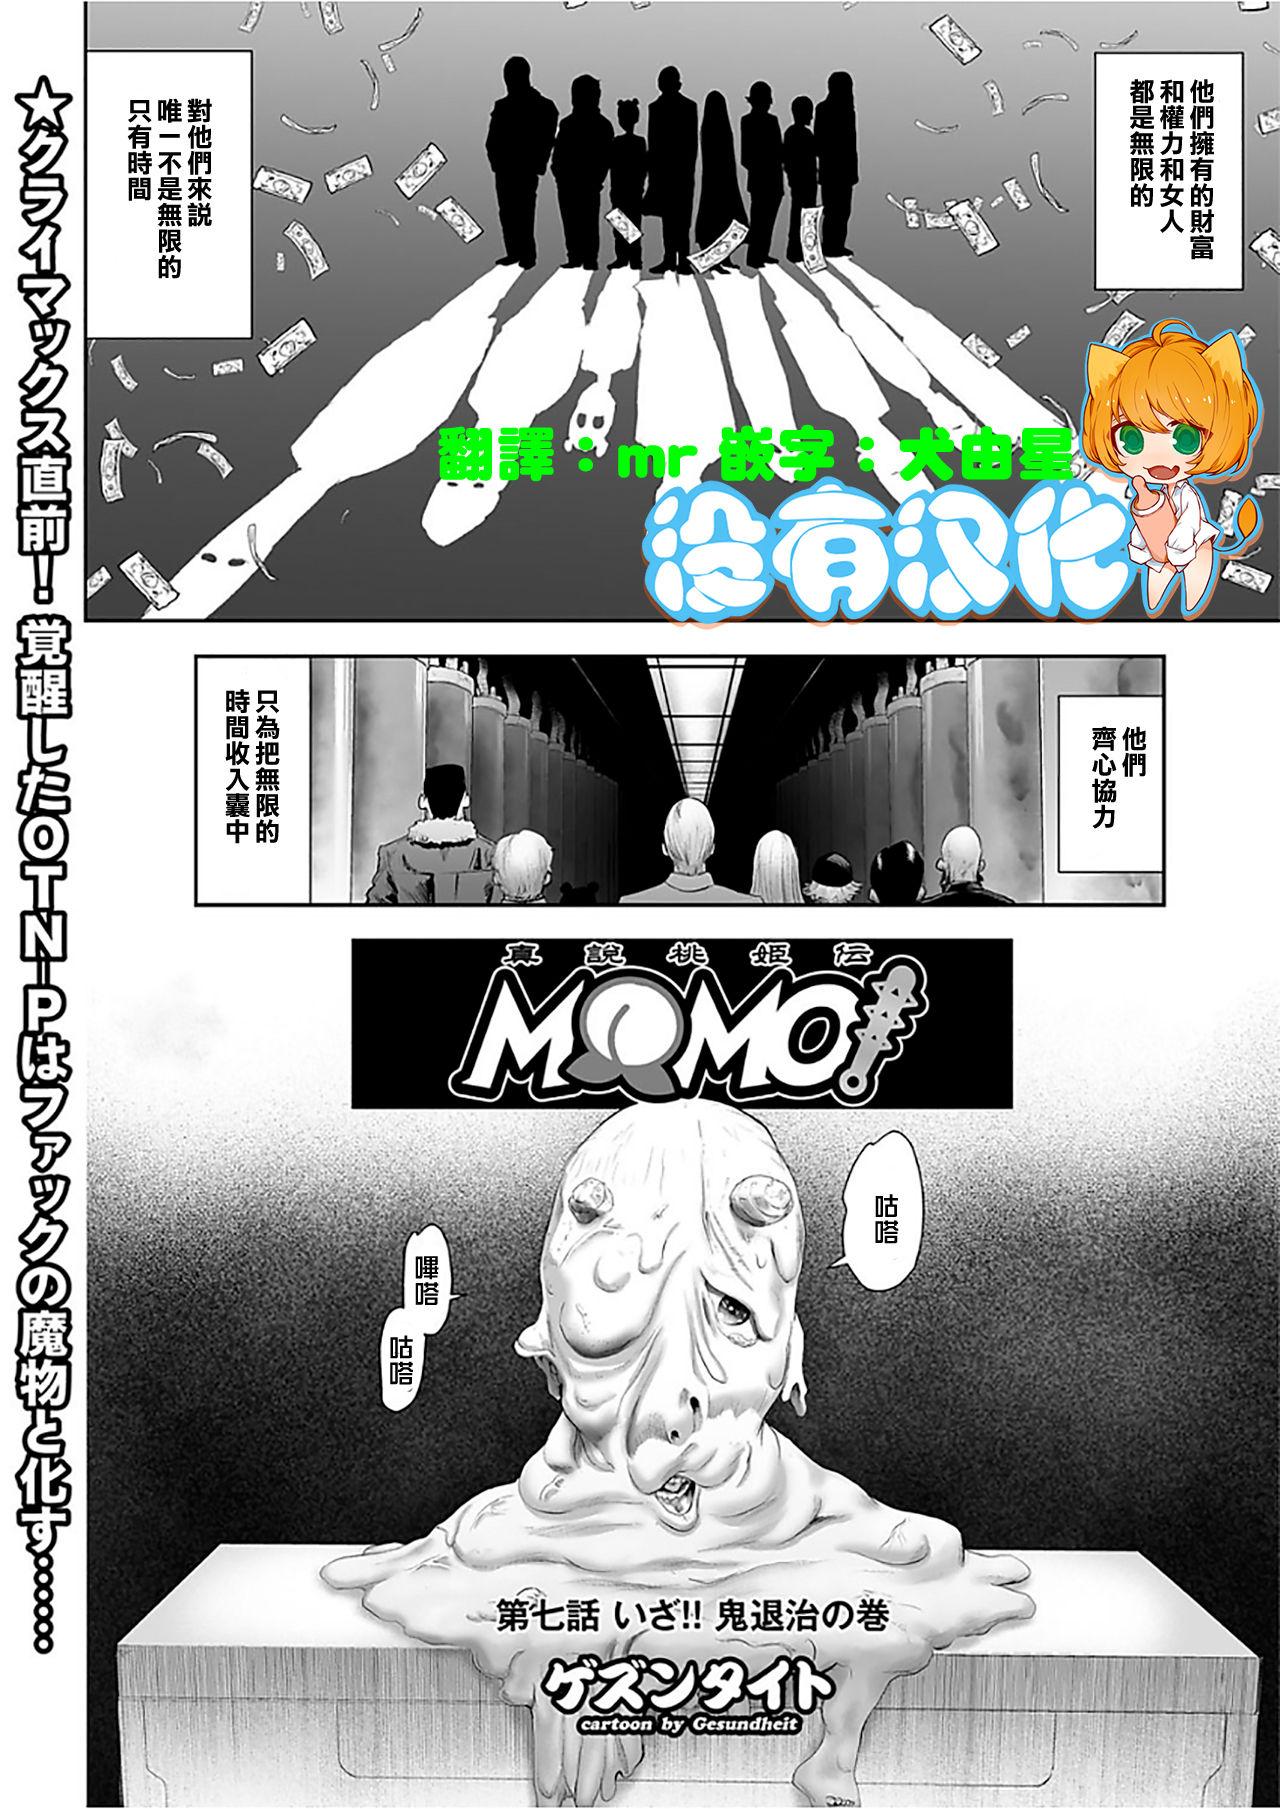 MOMO! Dainanawa Onitaiji No Ken 0